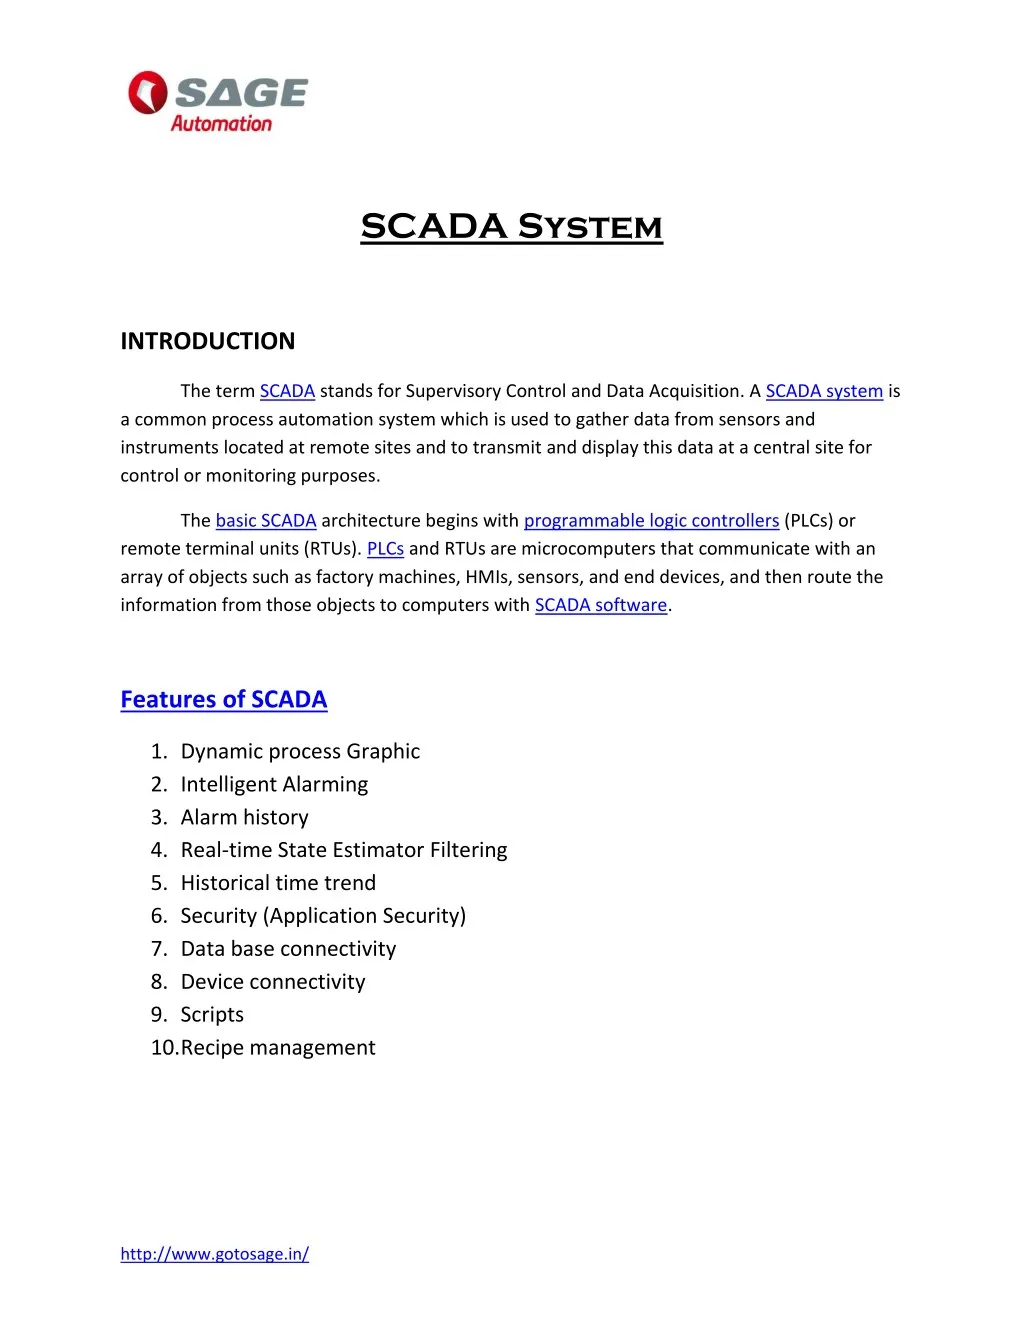 scada system